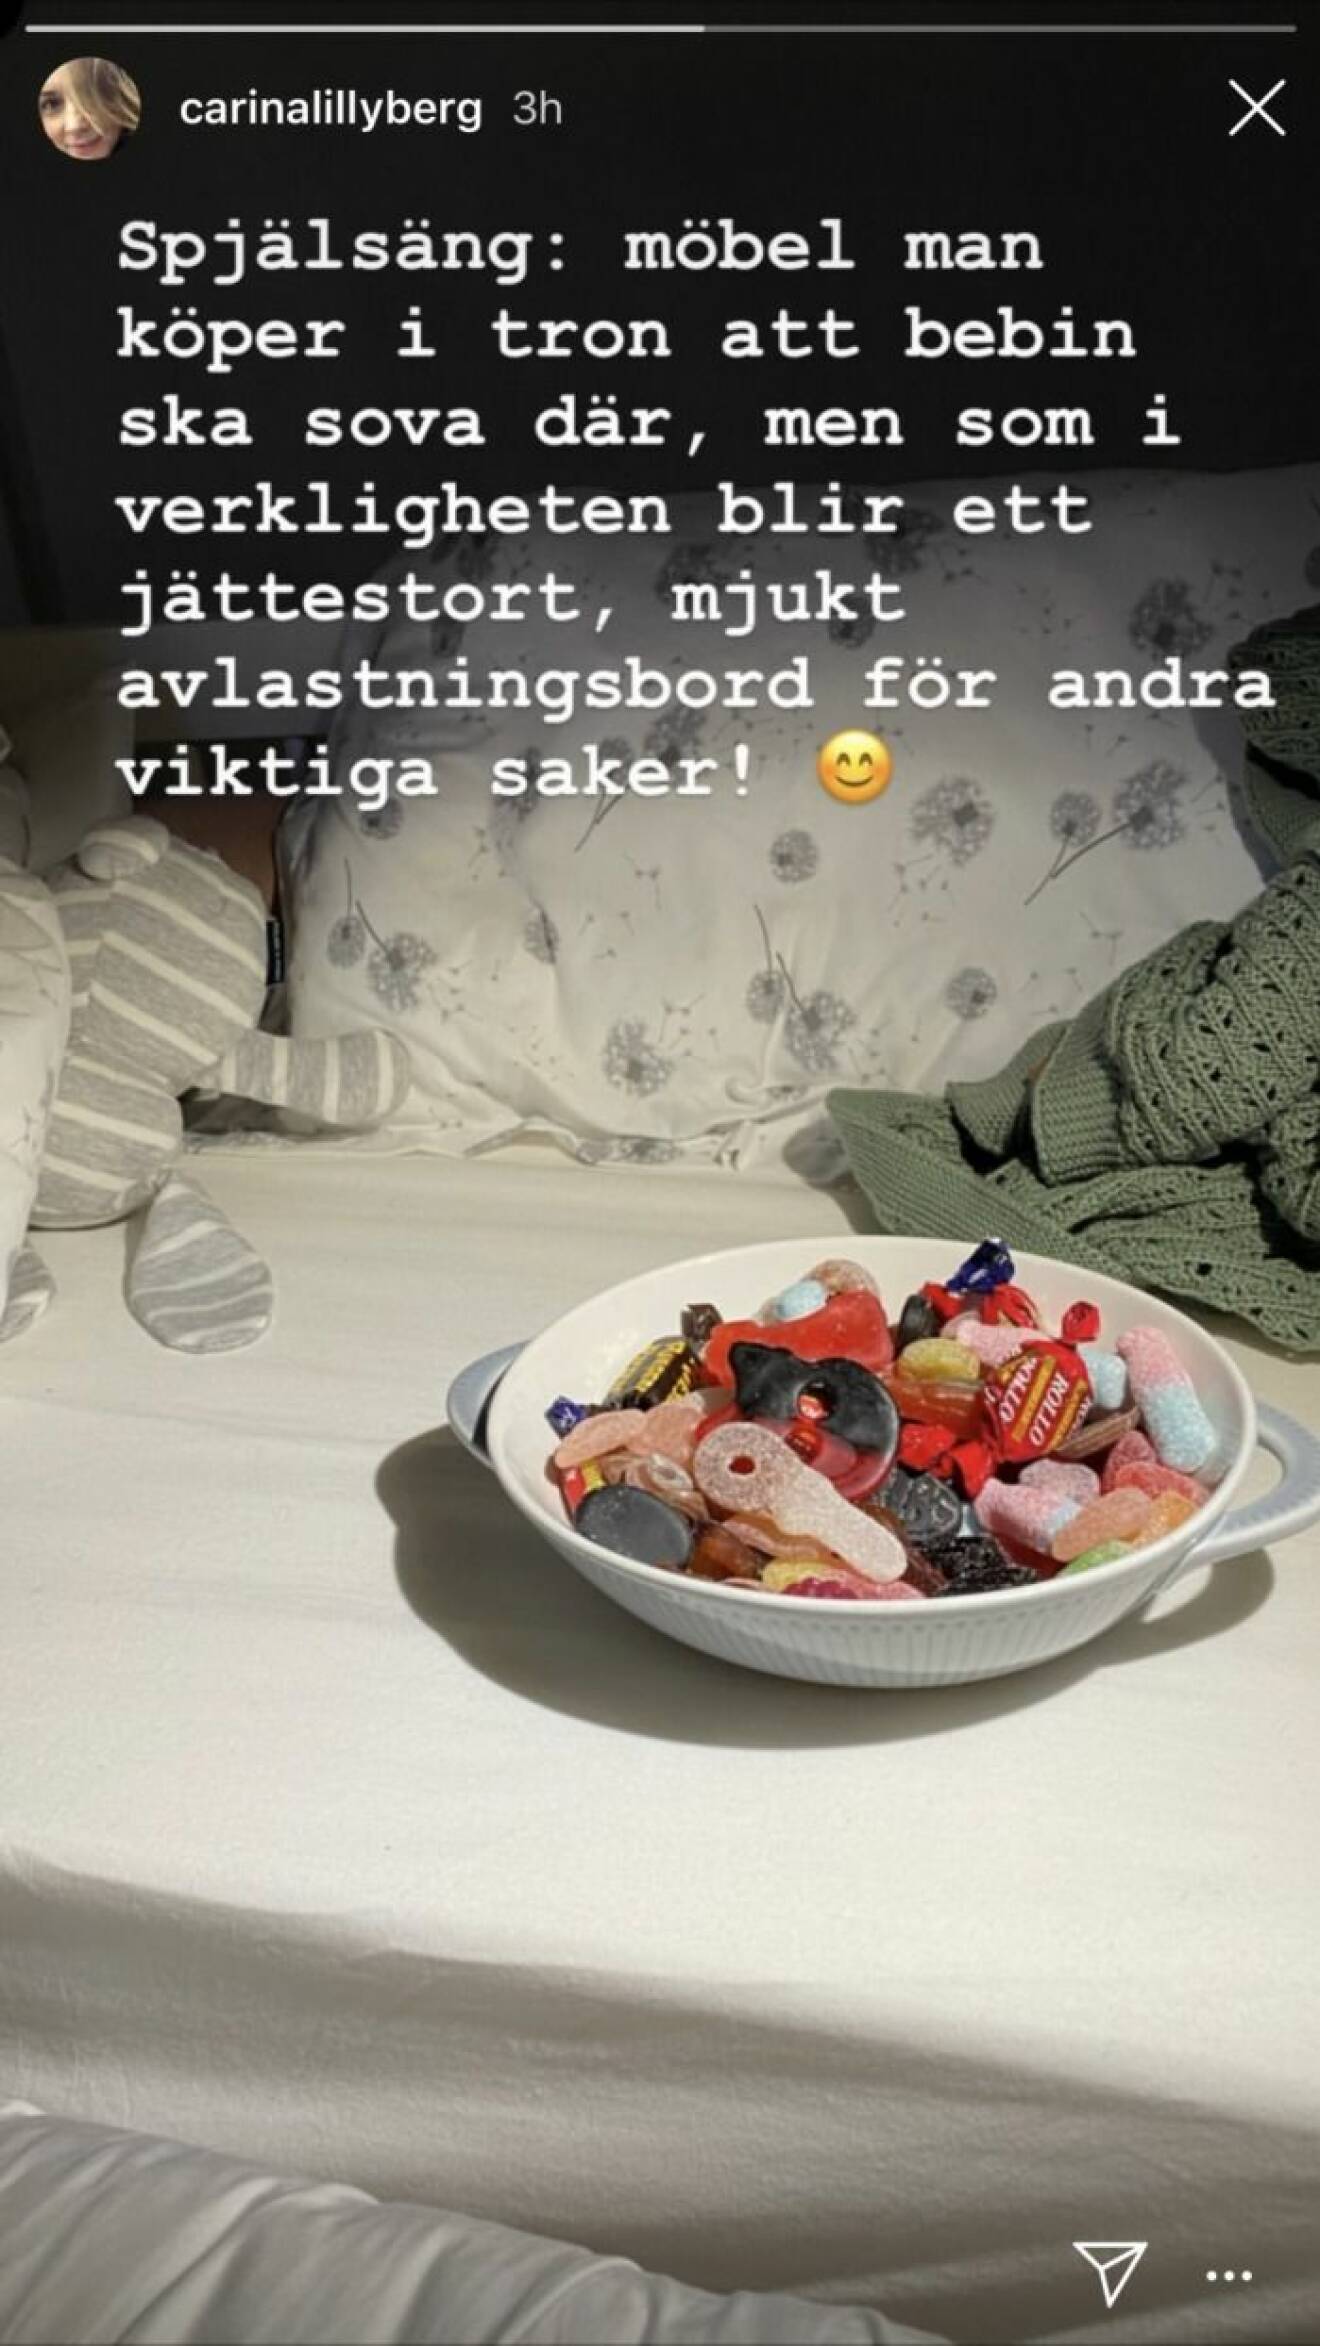 Instagraminlägg av Carina Berg på en spjälsäng och godisskål